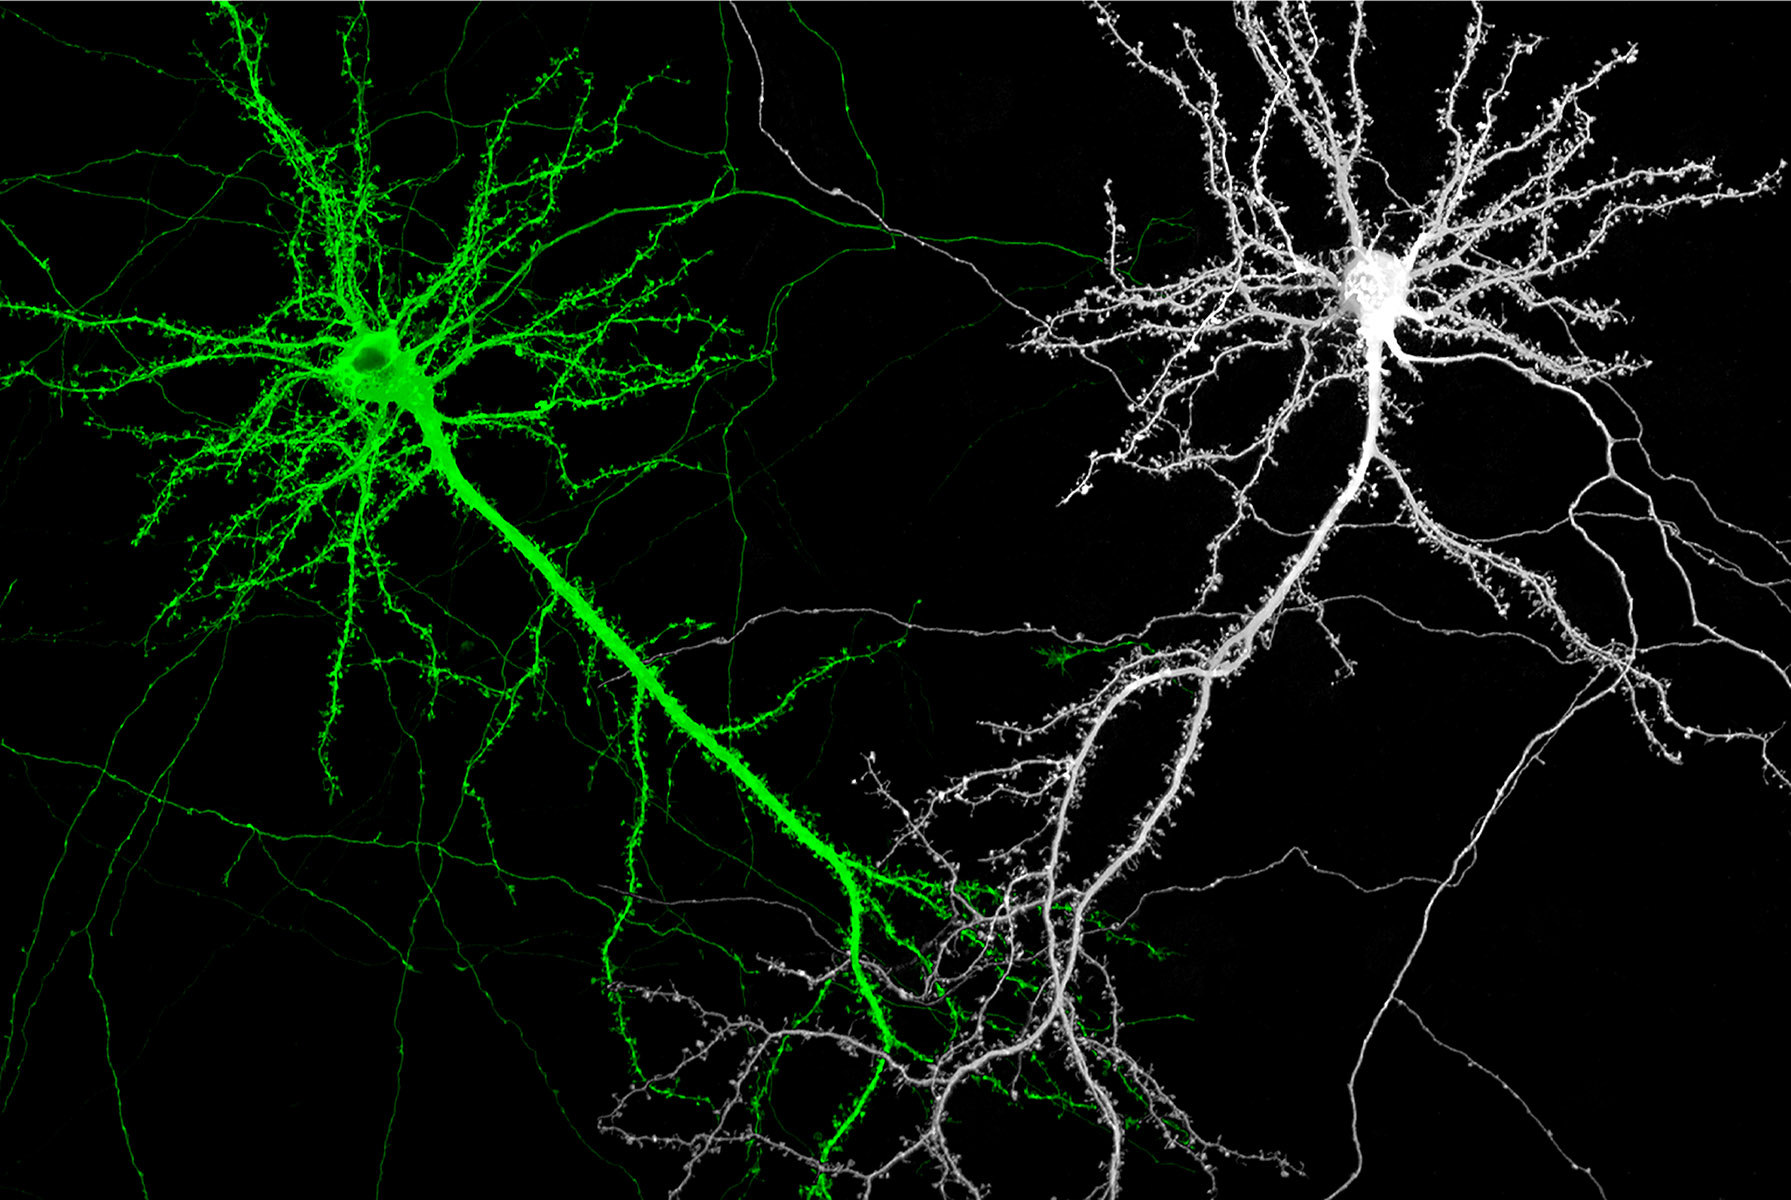 細數神經細胞的突觸點點 Counting Synapses in Neurons/黃怡萱 Yi-Shuian Huang/中央研究院生物醫學科學研究所 Institute of Biomedical Sciences, Academia Sinica